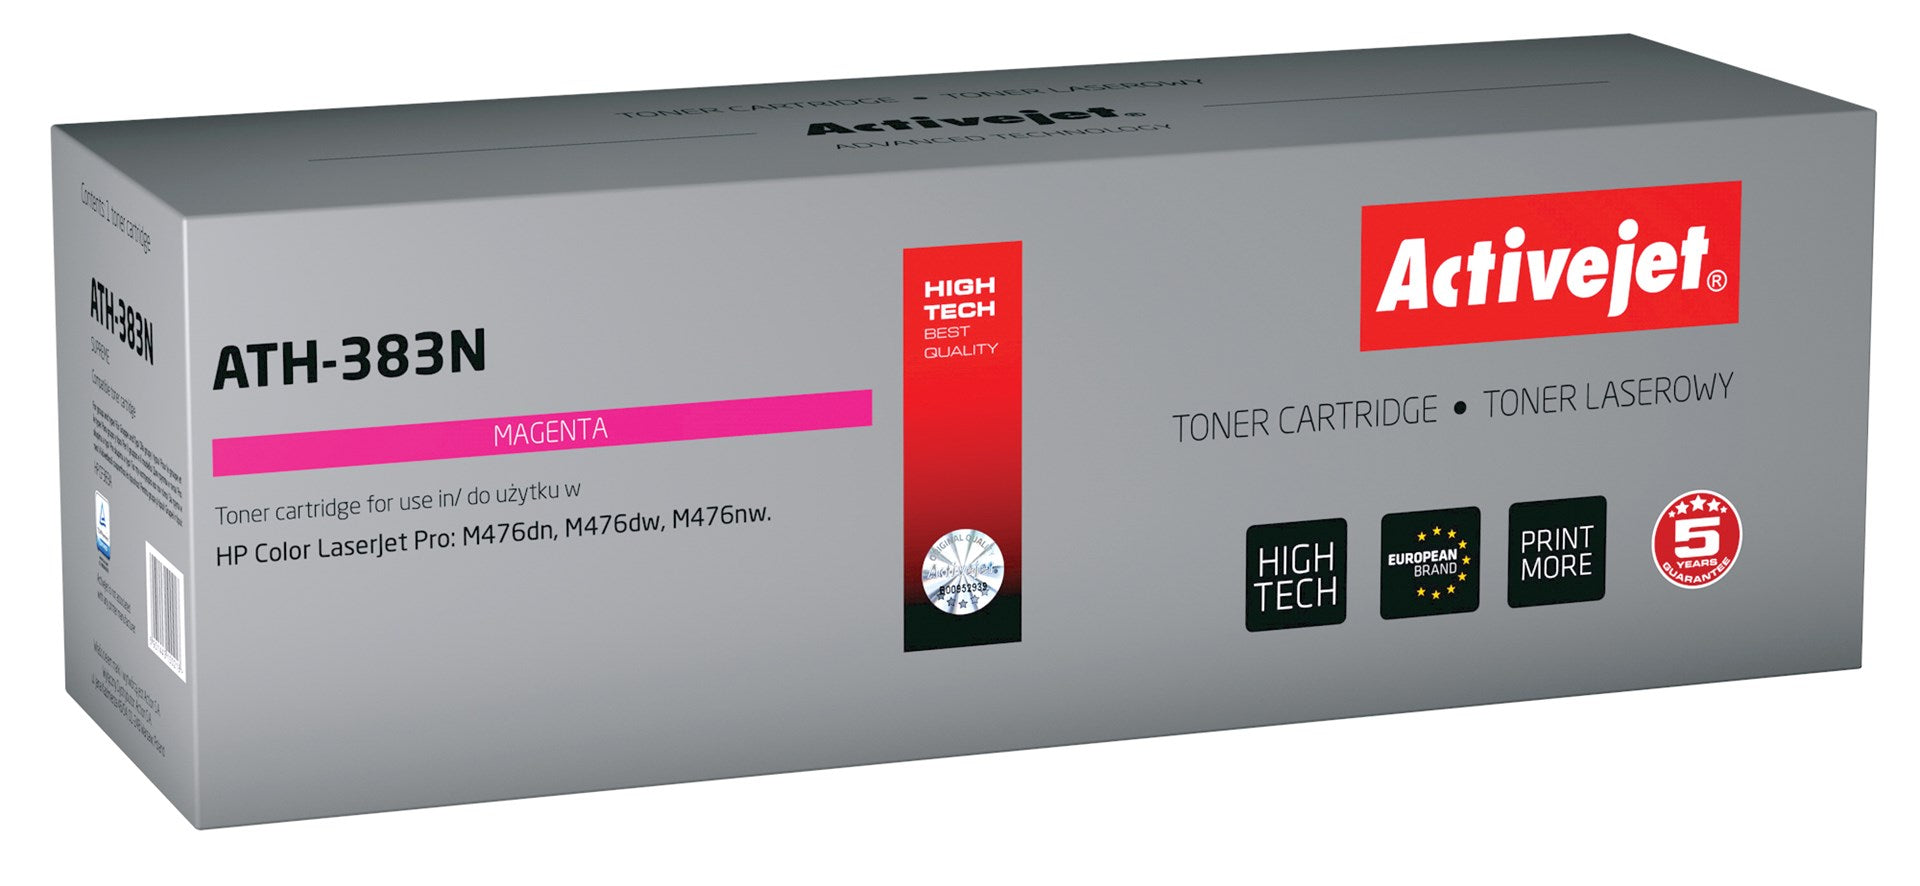 Activejet ATH-383N väriaine HP-tulostimeen, HP CF383A korvaava väriaine, Supreme, 2700 sivua, magenta - KorhoneCom